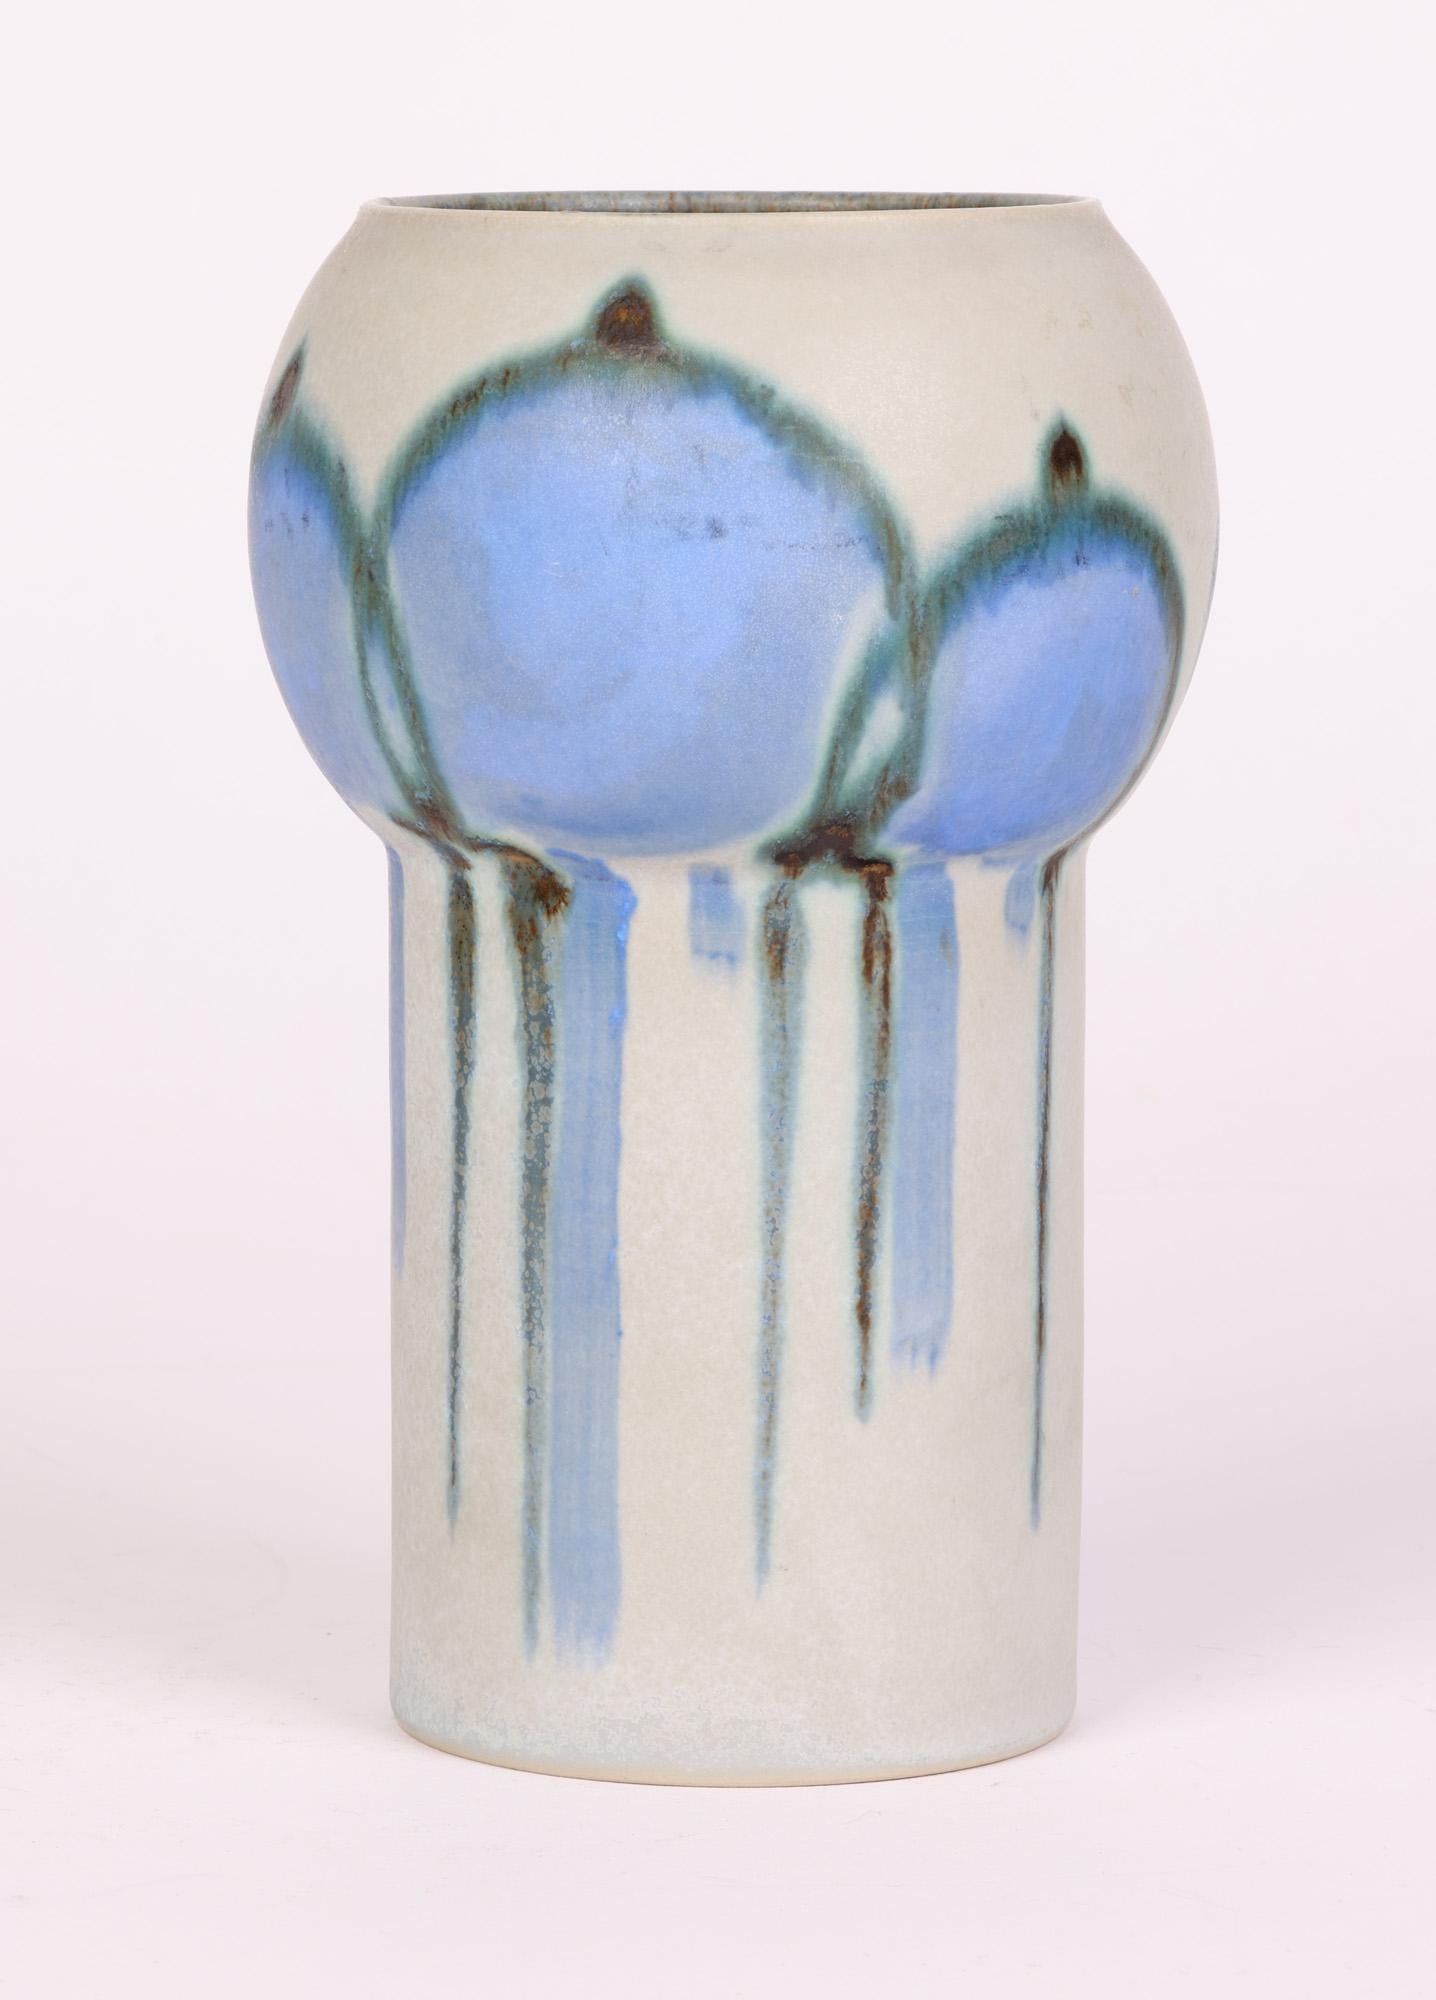 Drejar Gruppen for Rörstrand Swedish Stylized Modern Ceramic Vase, 1973 For Sale 6